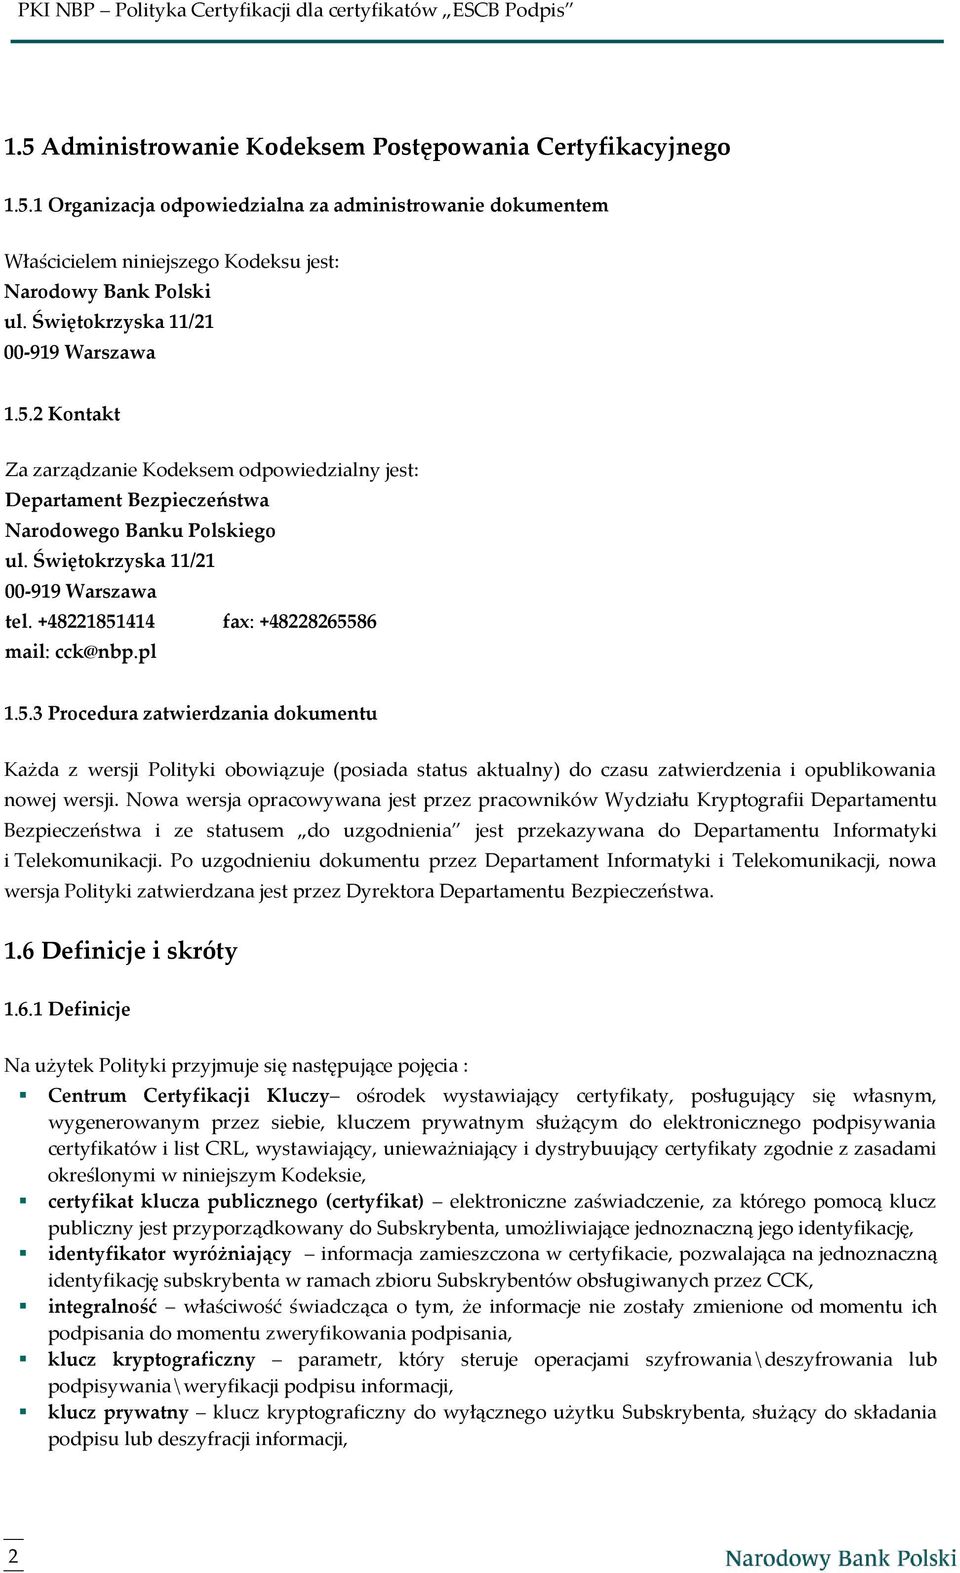 +48221851414 fax: +48228265586 mail: cck@nbp.pl 1.5.3 Procedura zatwierdzania dokumentu Każda z wersji Polityki obowiązuje (posiada status aktualny) do czasu zatwierdzenia i opublikowania nowej wersji.